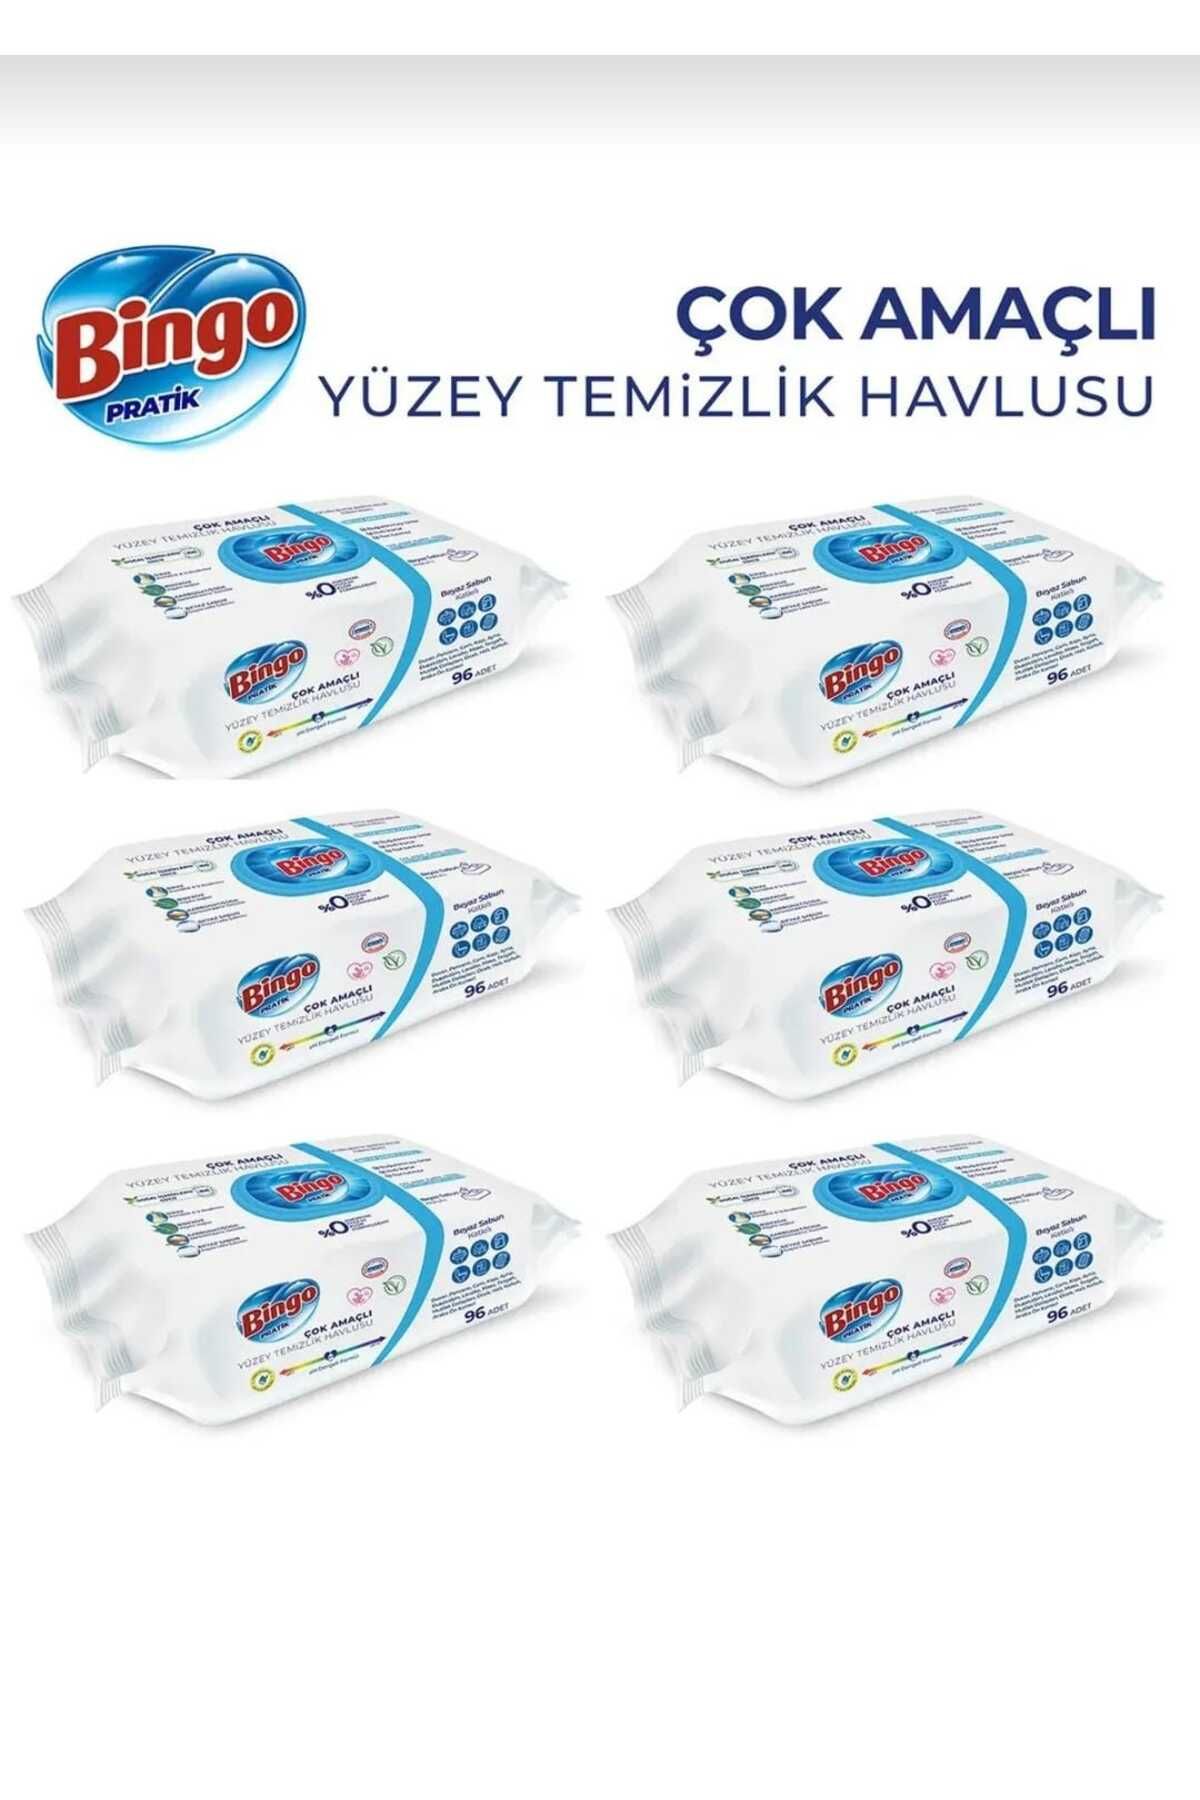 Bingo bingoBingo Beyaz Sabun Katkılı Yüzey Temizlik Havlusu her paket 96 Yaprak toplam 6 paket